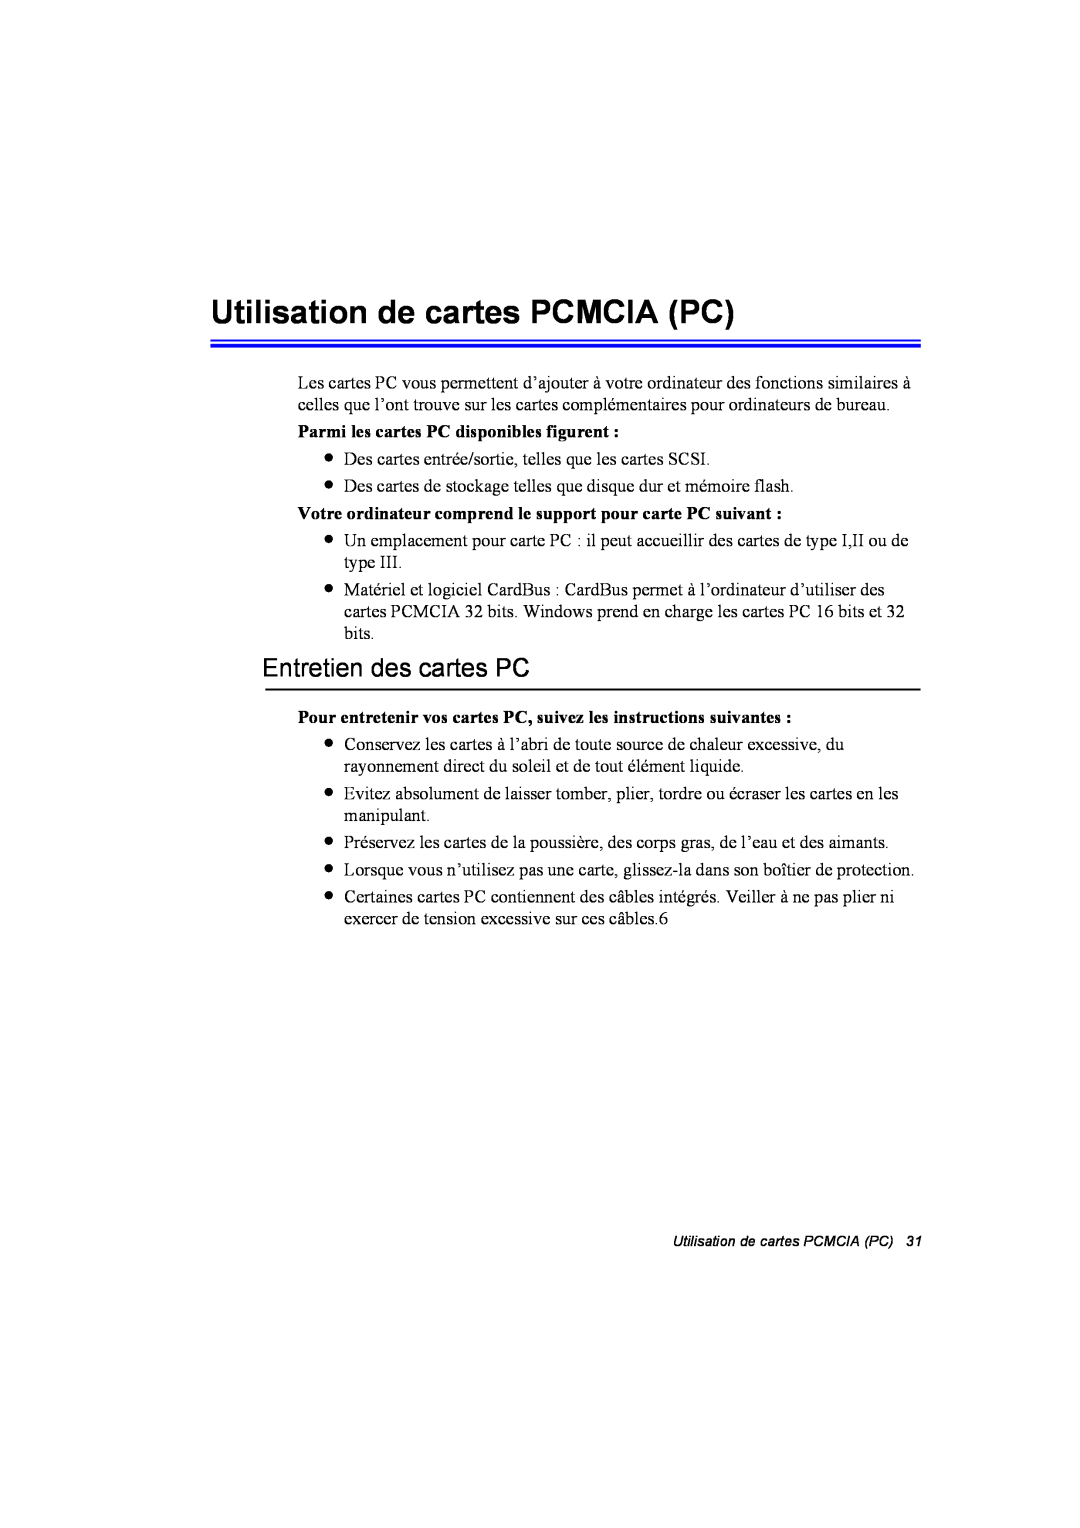 Samsung NA10AJ0001/SEF Utilisation de cartes PCMCIA PC, Entretien des cartes PC, Parmi les cartes PC disponibles figurent 